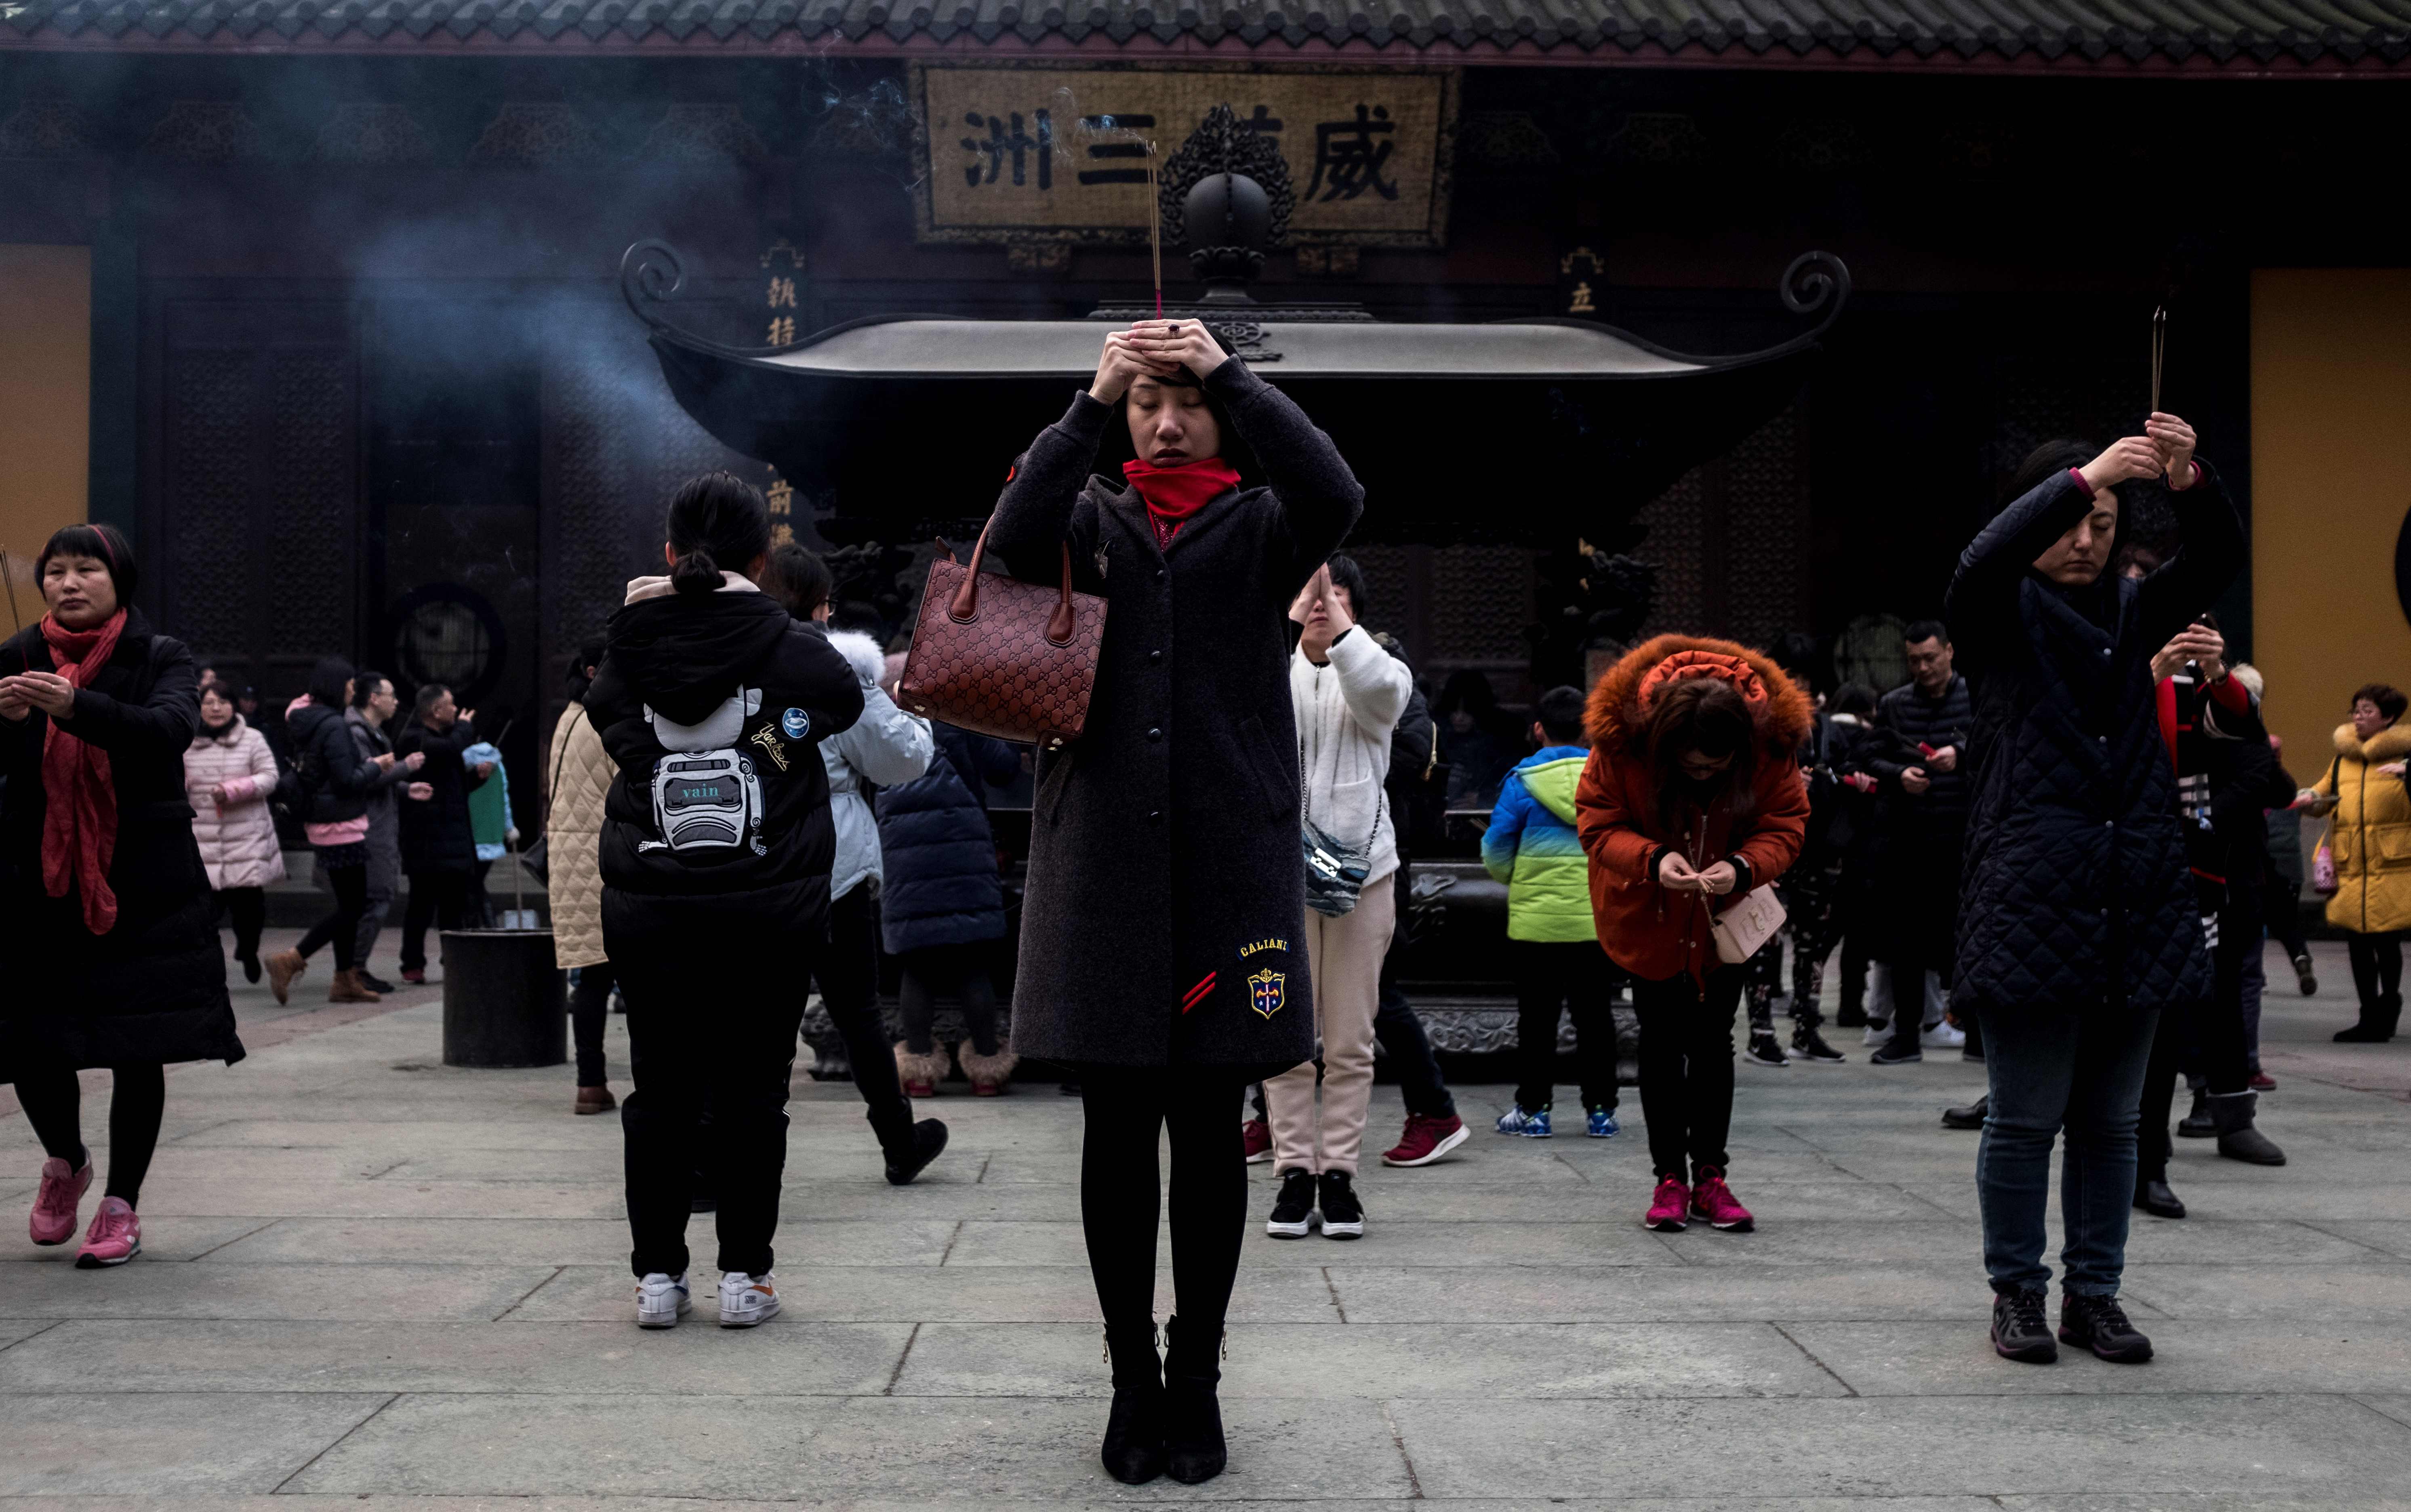 صينيون يؤدون طقوس دينية خاصة باحتفالات السنة الجديدة